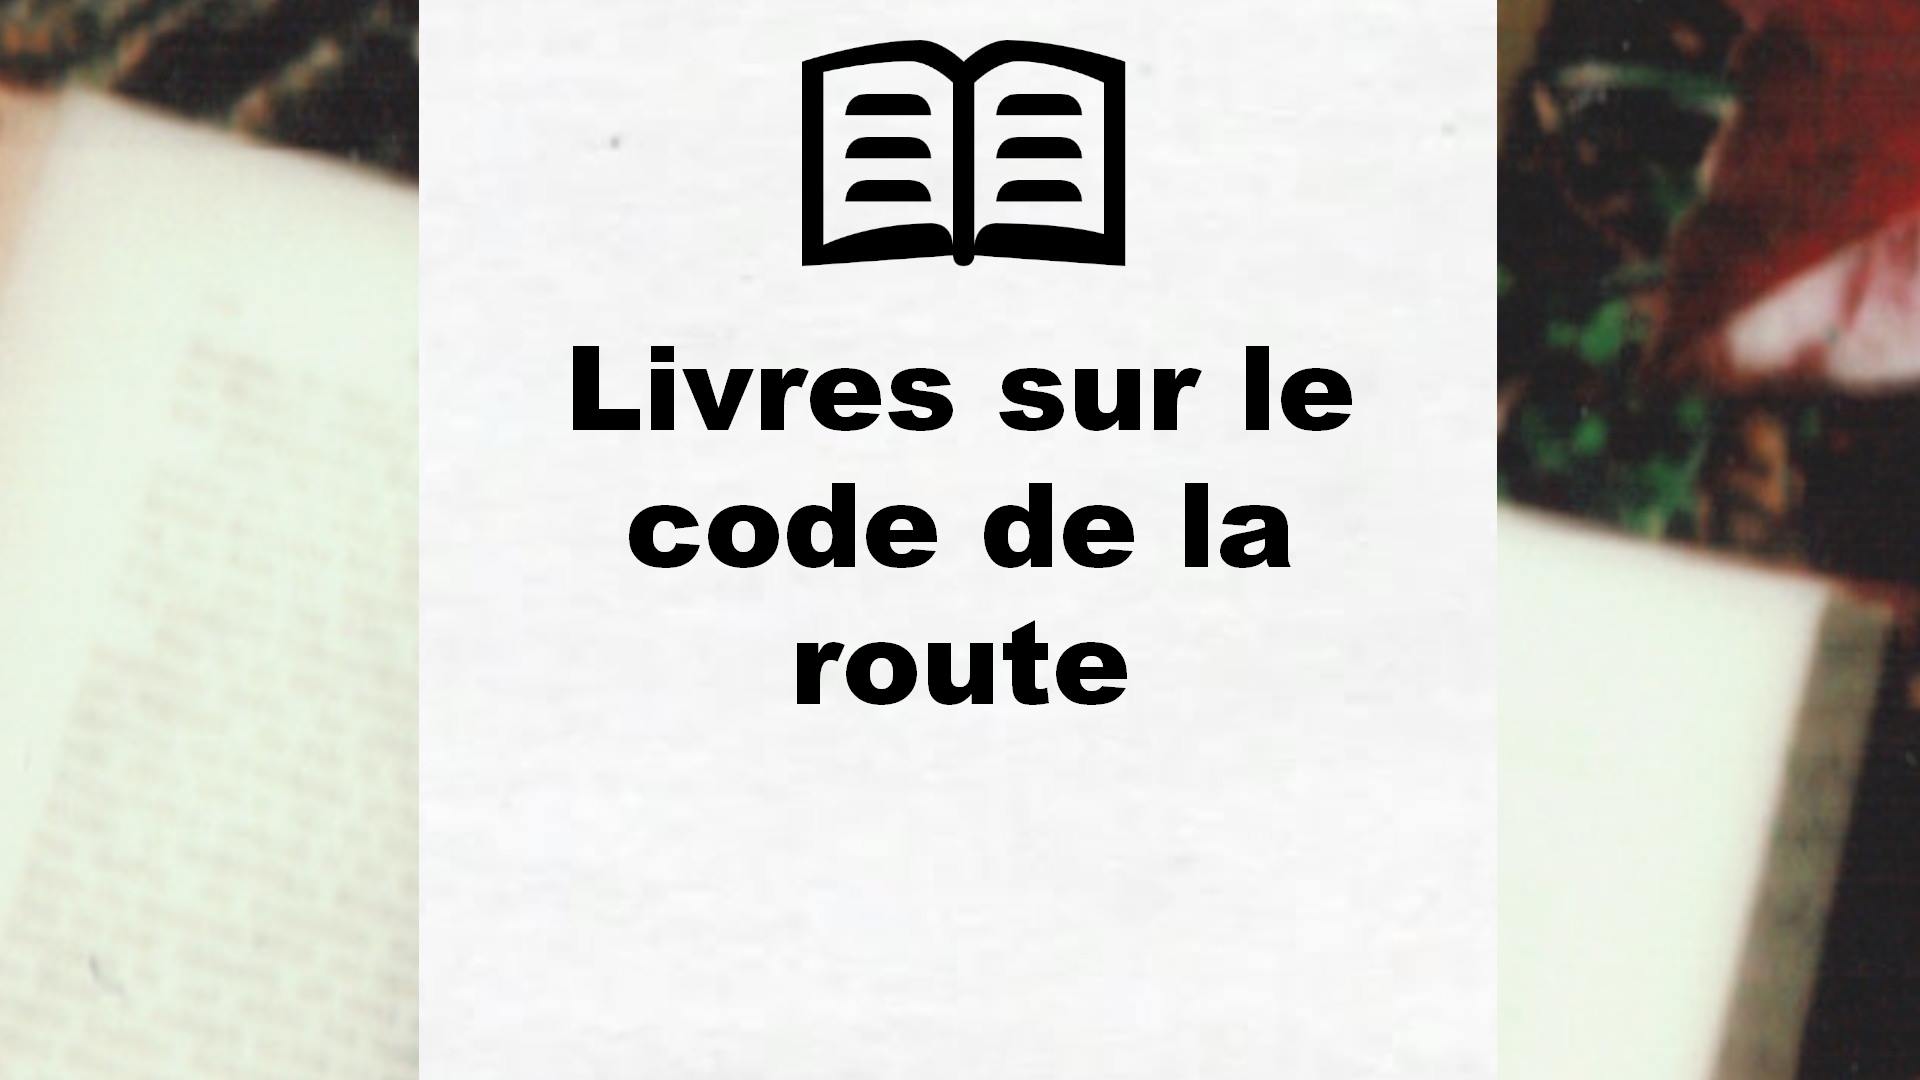 Livres sur le code de la route